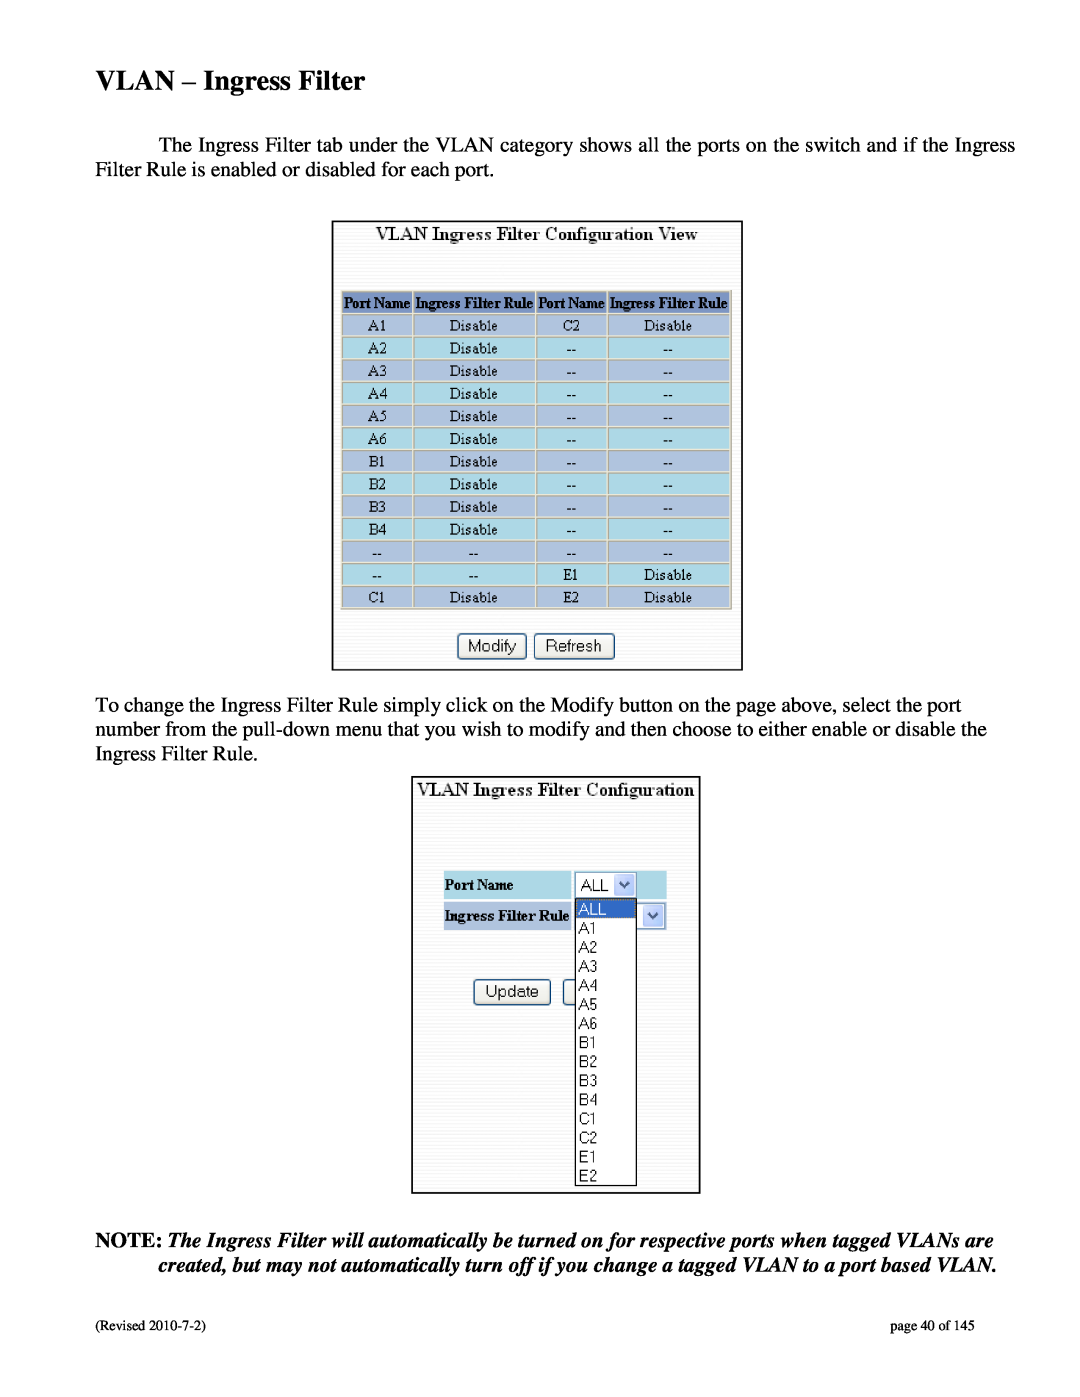 N-Tron 9000 user manual VLAN - Ingress Filter, page 40 of 